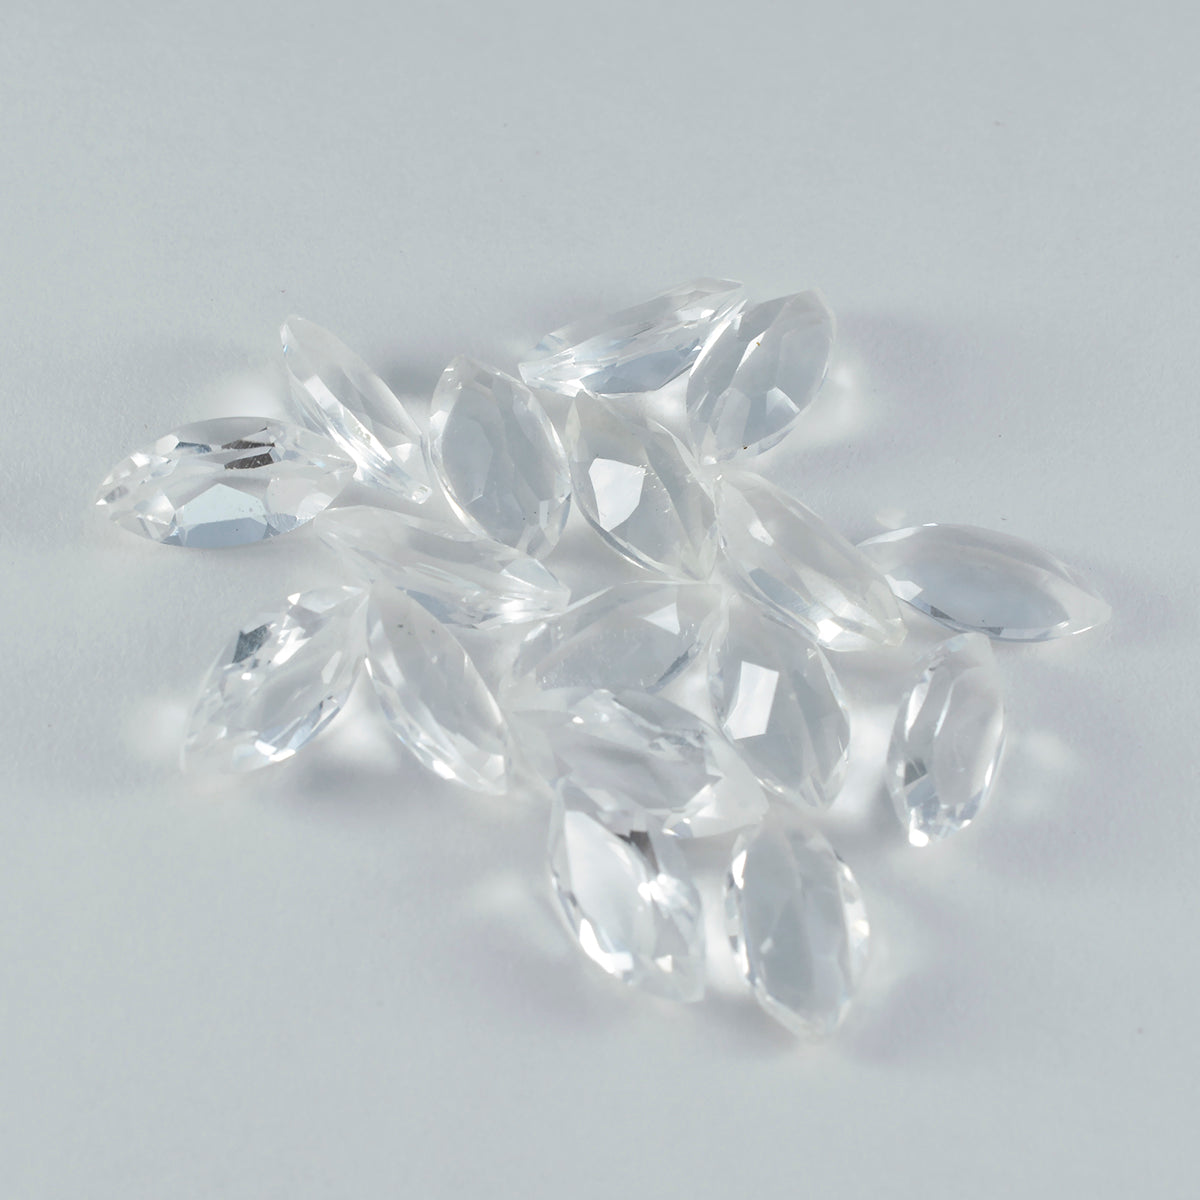 riyogems 1шт белый кристалл кварца ограненный 7х14 мм форма маркиза А+1 камень качества